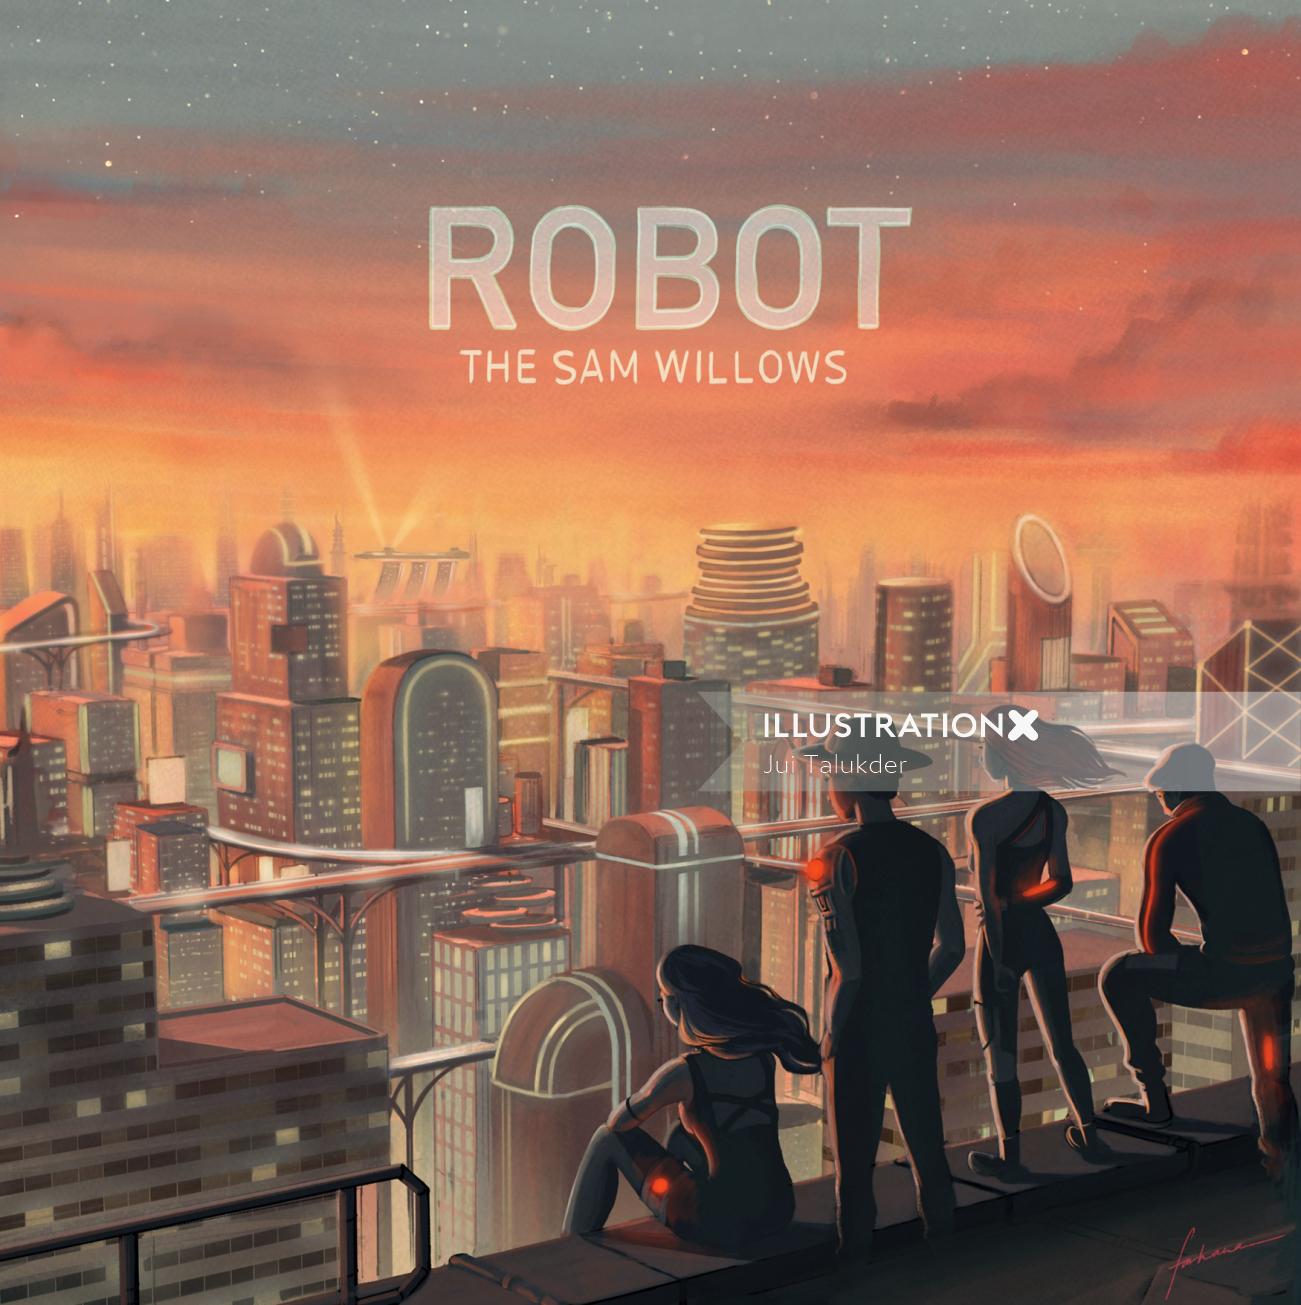 Couverture de la chanson Robot By The Sam Willows